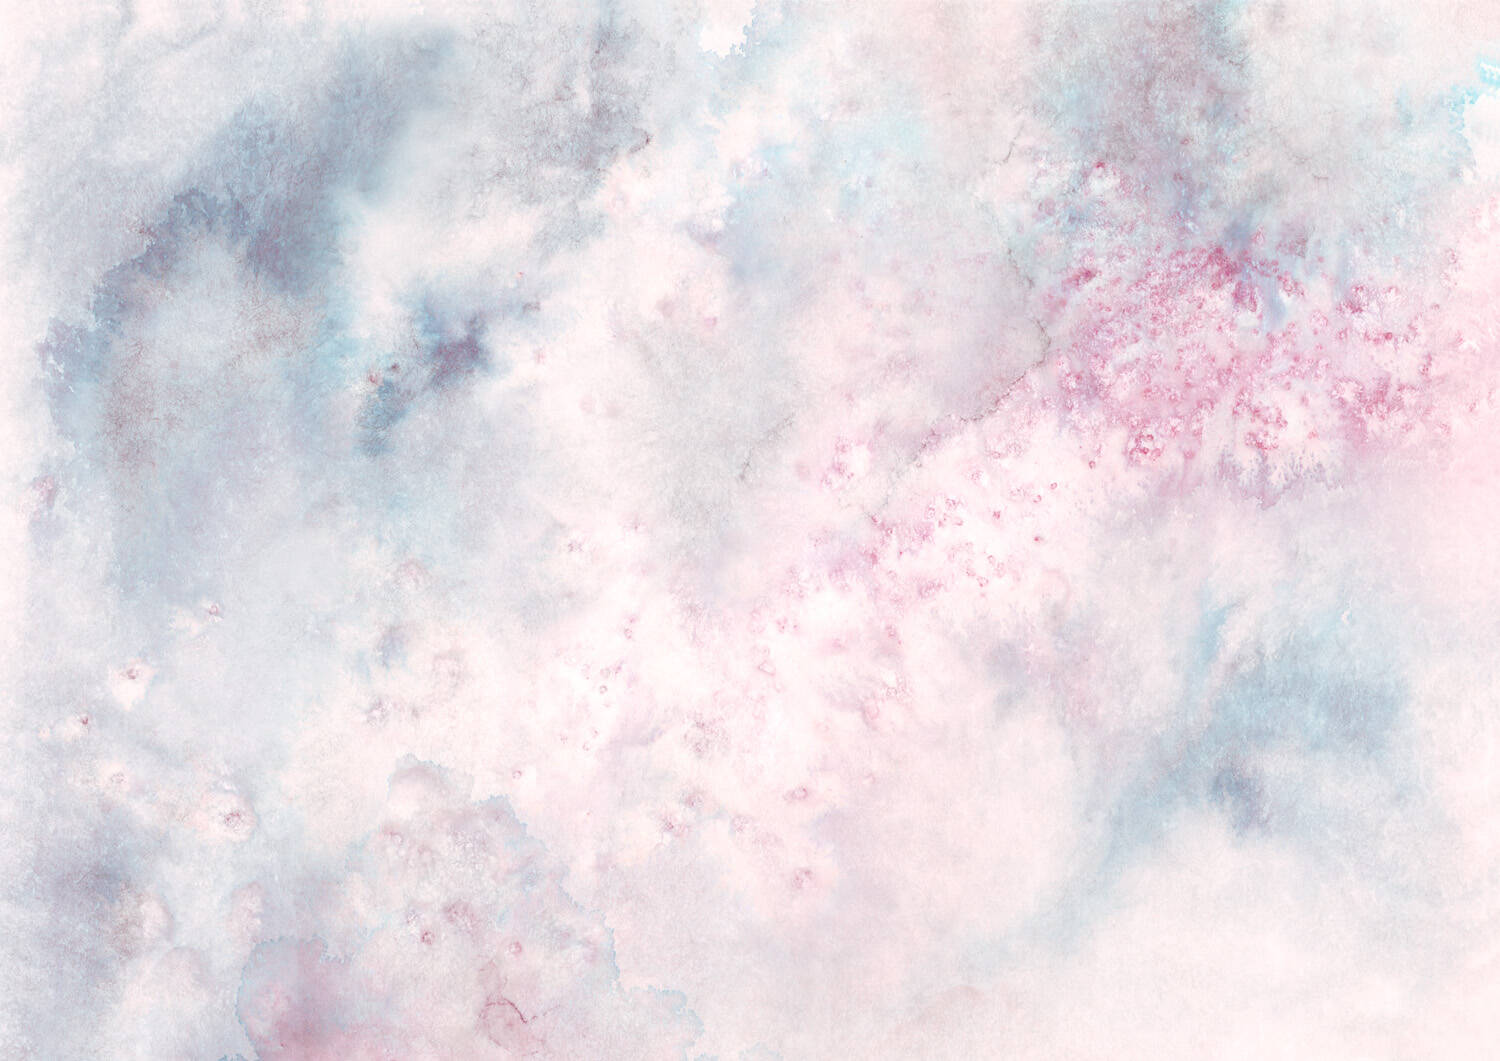 Wandbild - Wolkiges Aquarell in weiß, blau und rosé mit spannenden Farbverläufen 